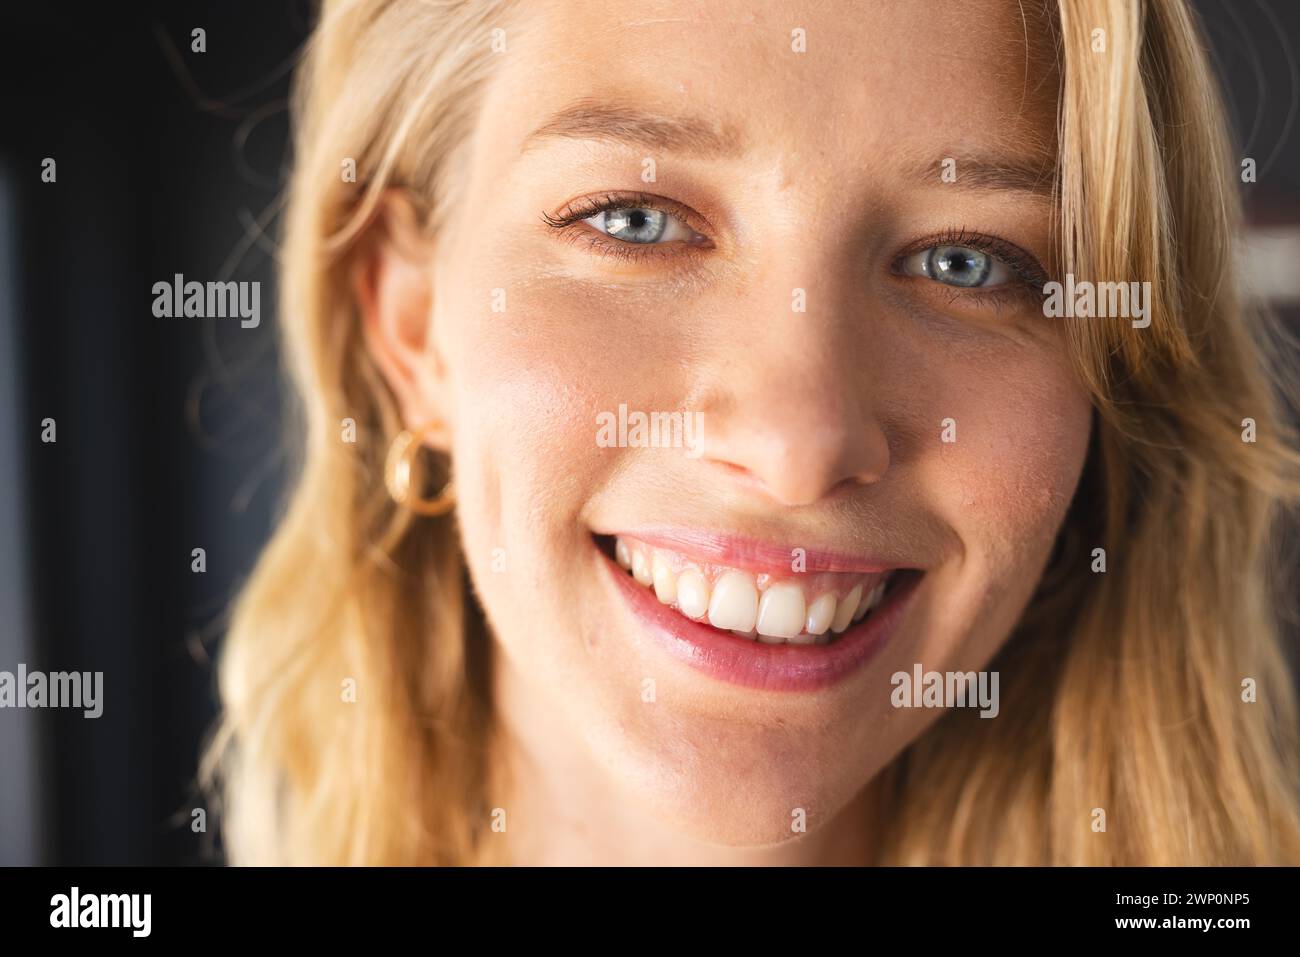 Die junge kaukasische Frau mit blonden Haaren und blauen Augen lächelt in die Kamera Stockfoto